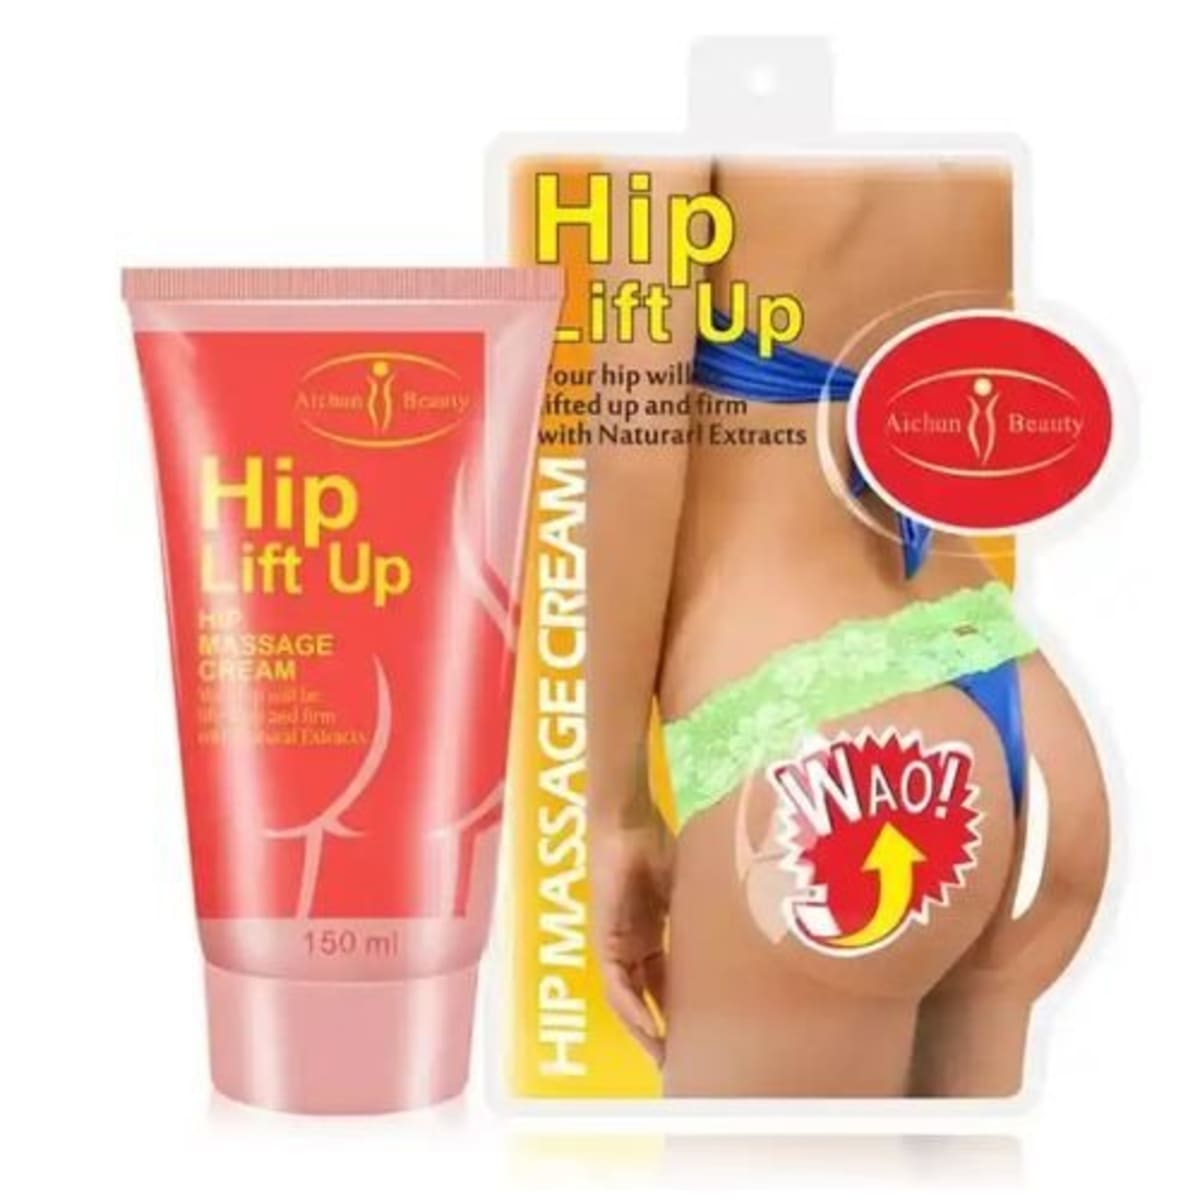 Aichun Beauty Hip Lift Up Massage Butt Enlargement Cream - 150ml